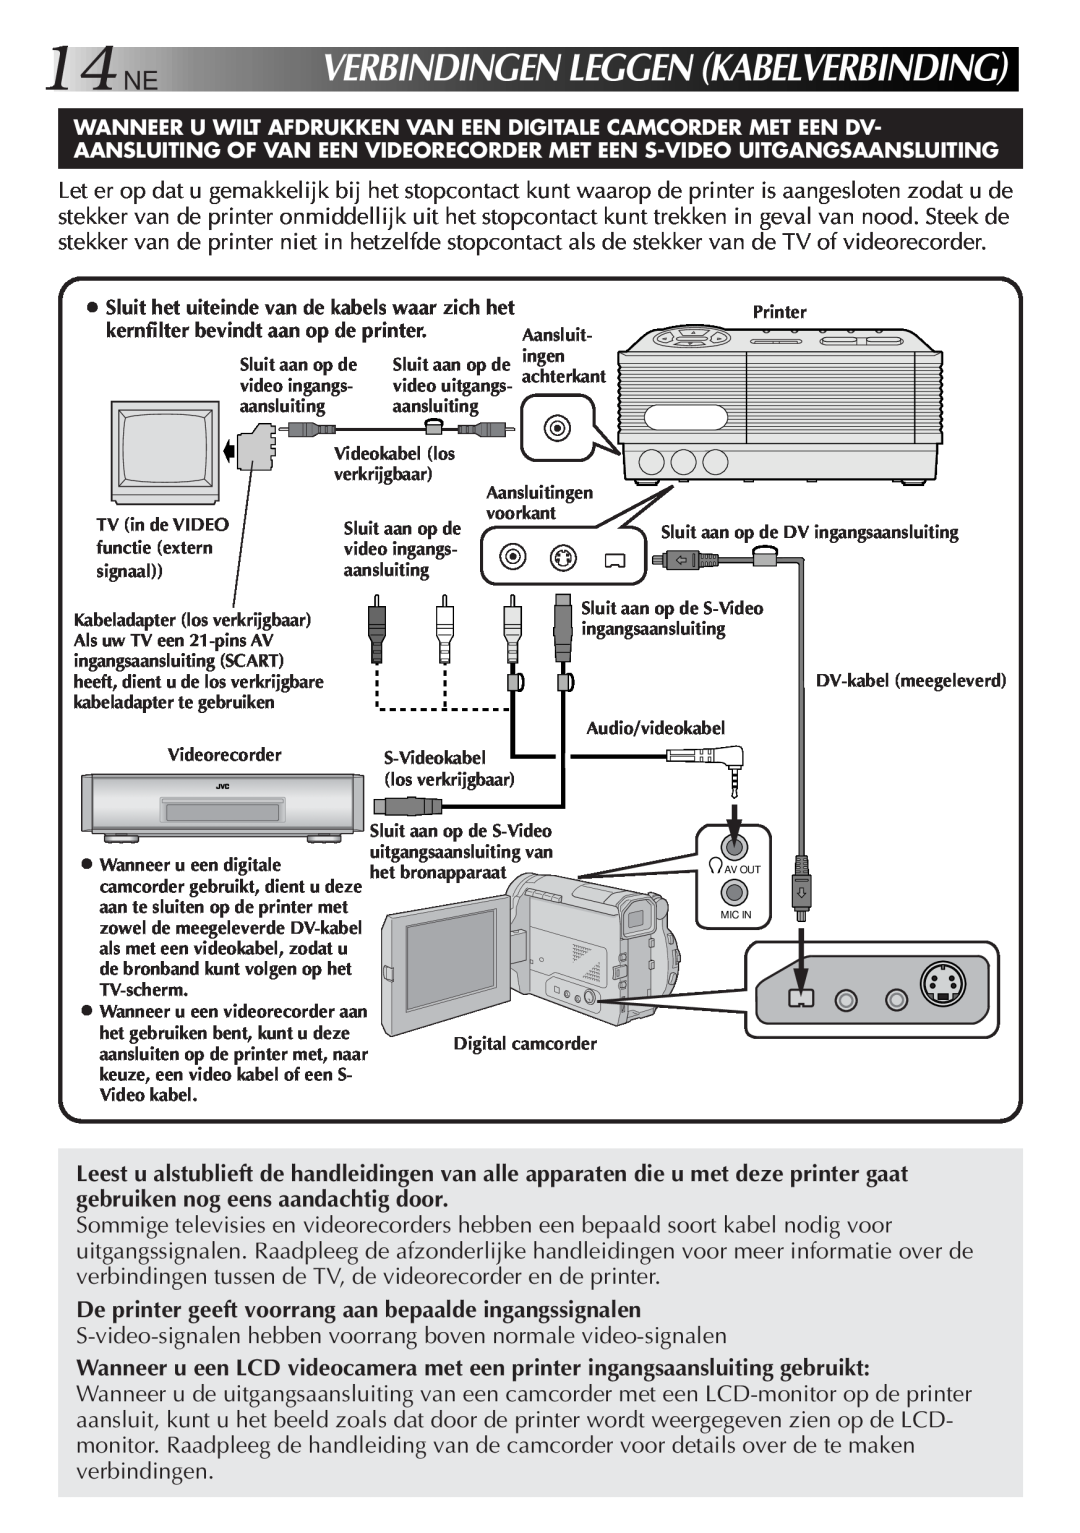 JVC GV-DT3 manual 14NE, Verbindingenleggenkabelverbinding 